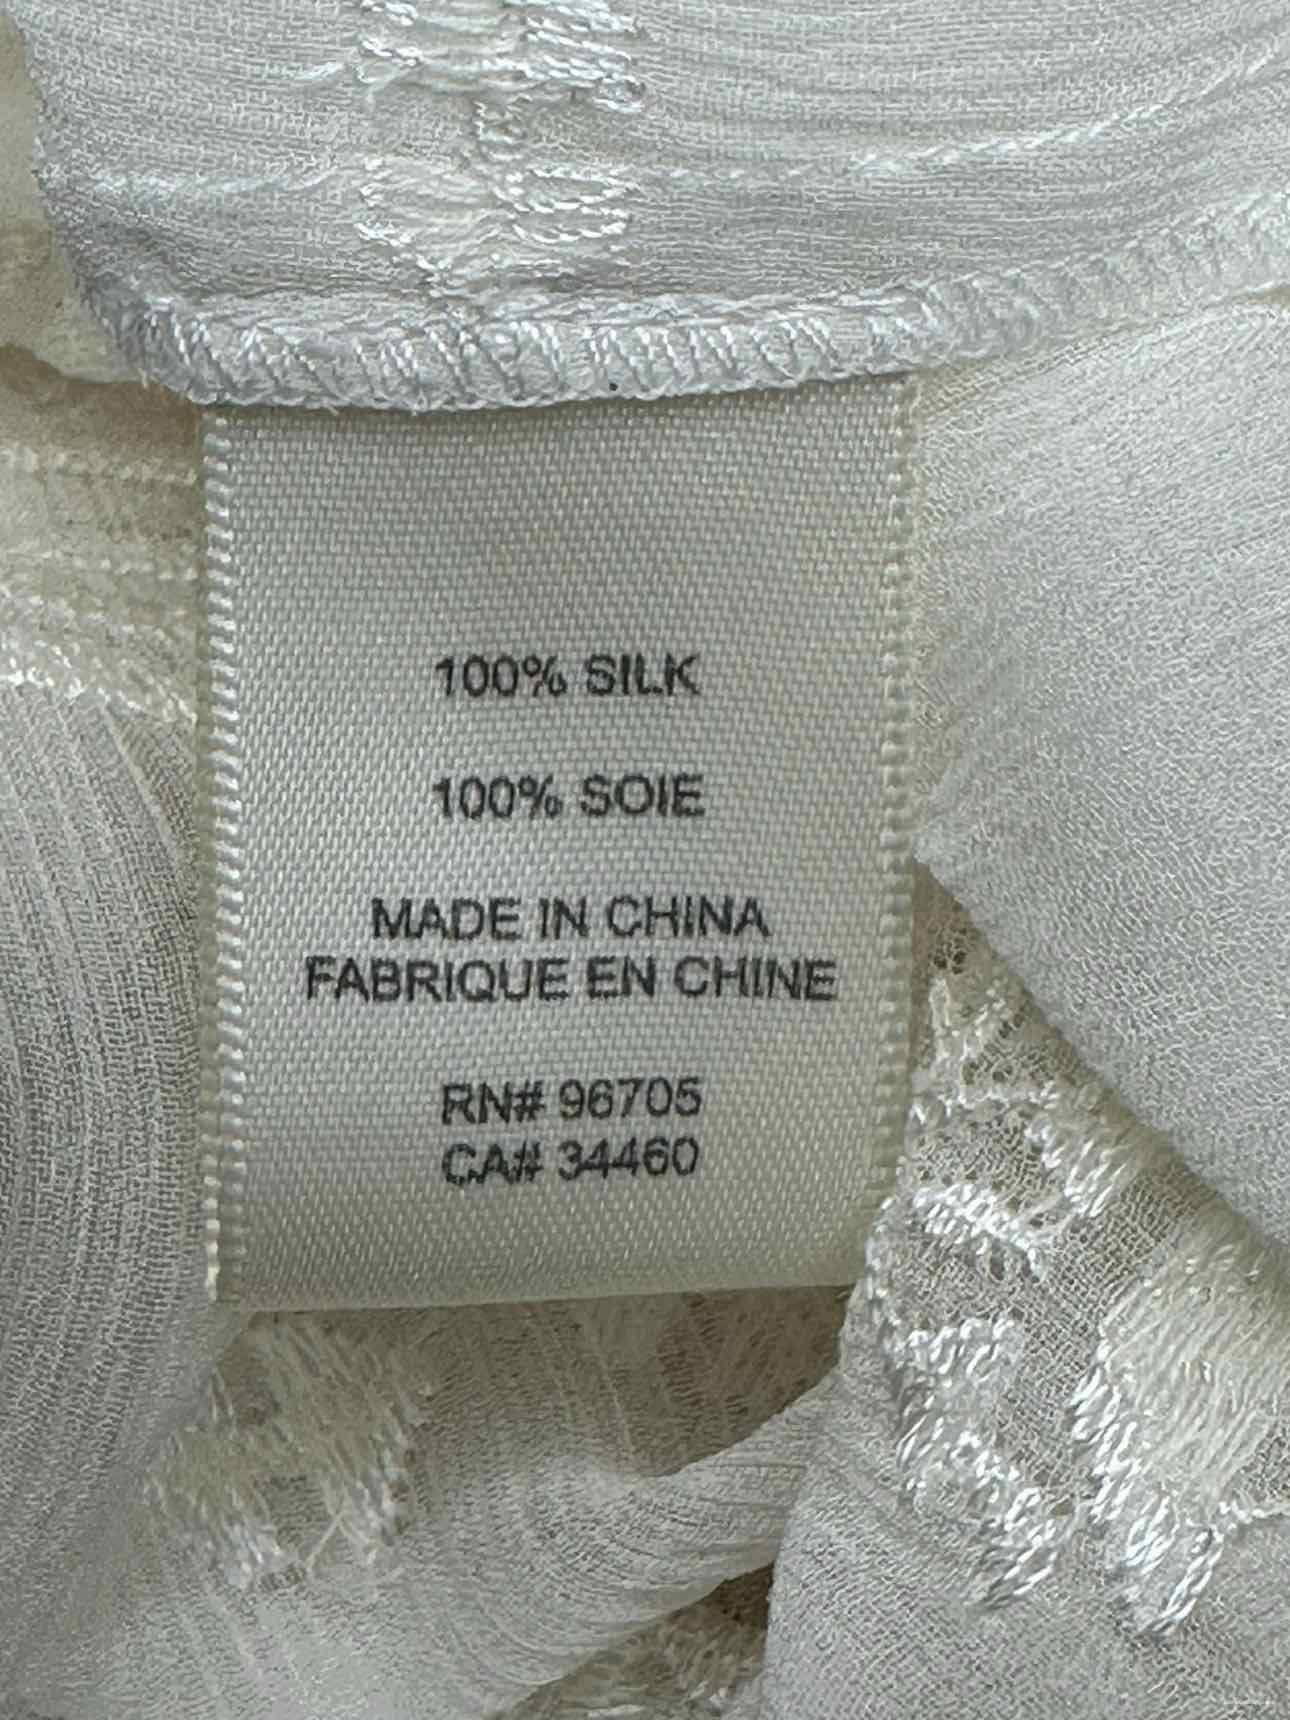 REBECCA TAYLOR Cream 100% Silk Embroidered Top Size 0